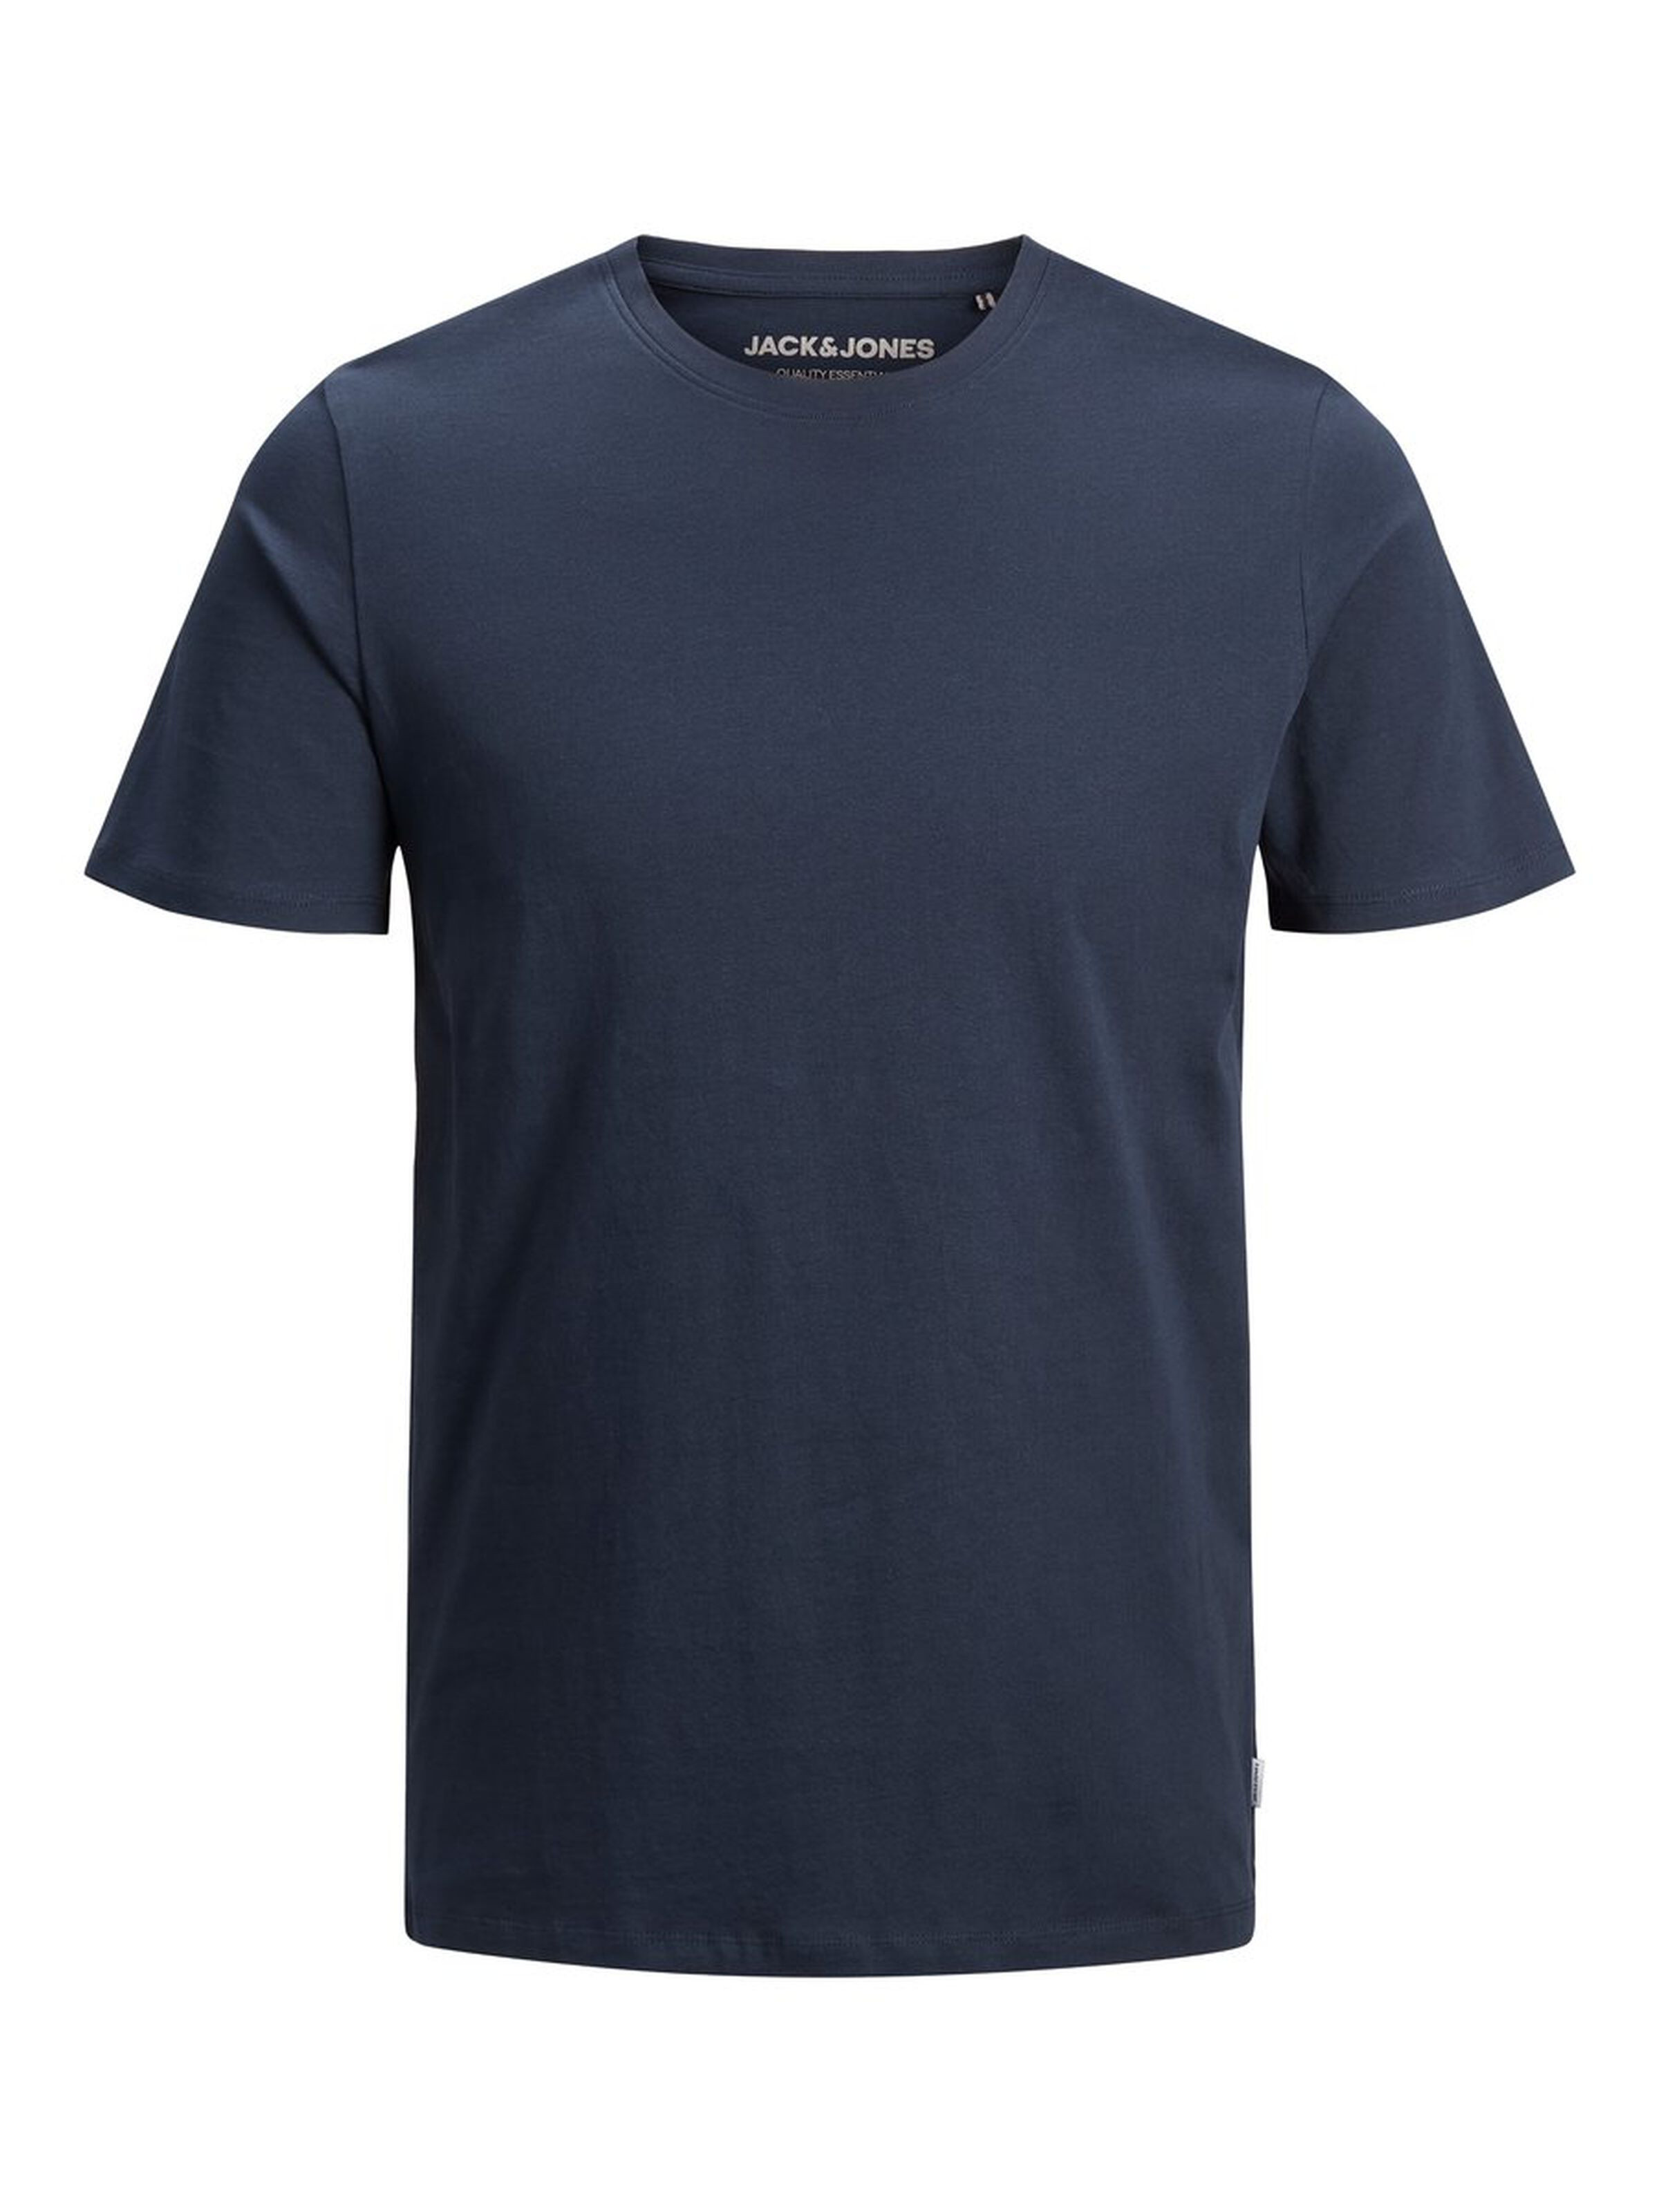 Jack & Jones - Cotton T-shirt, Dark Blue, large image number 0